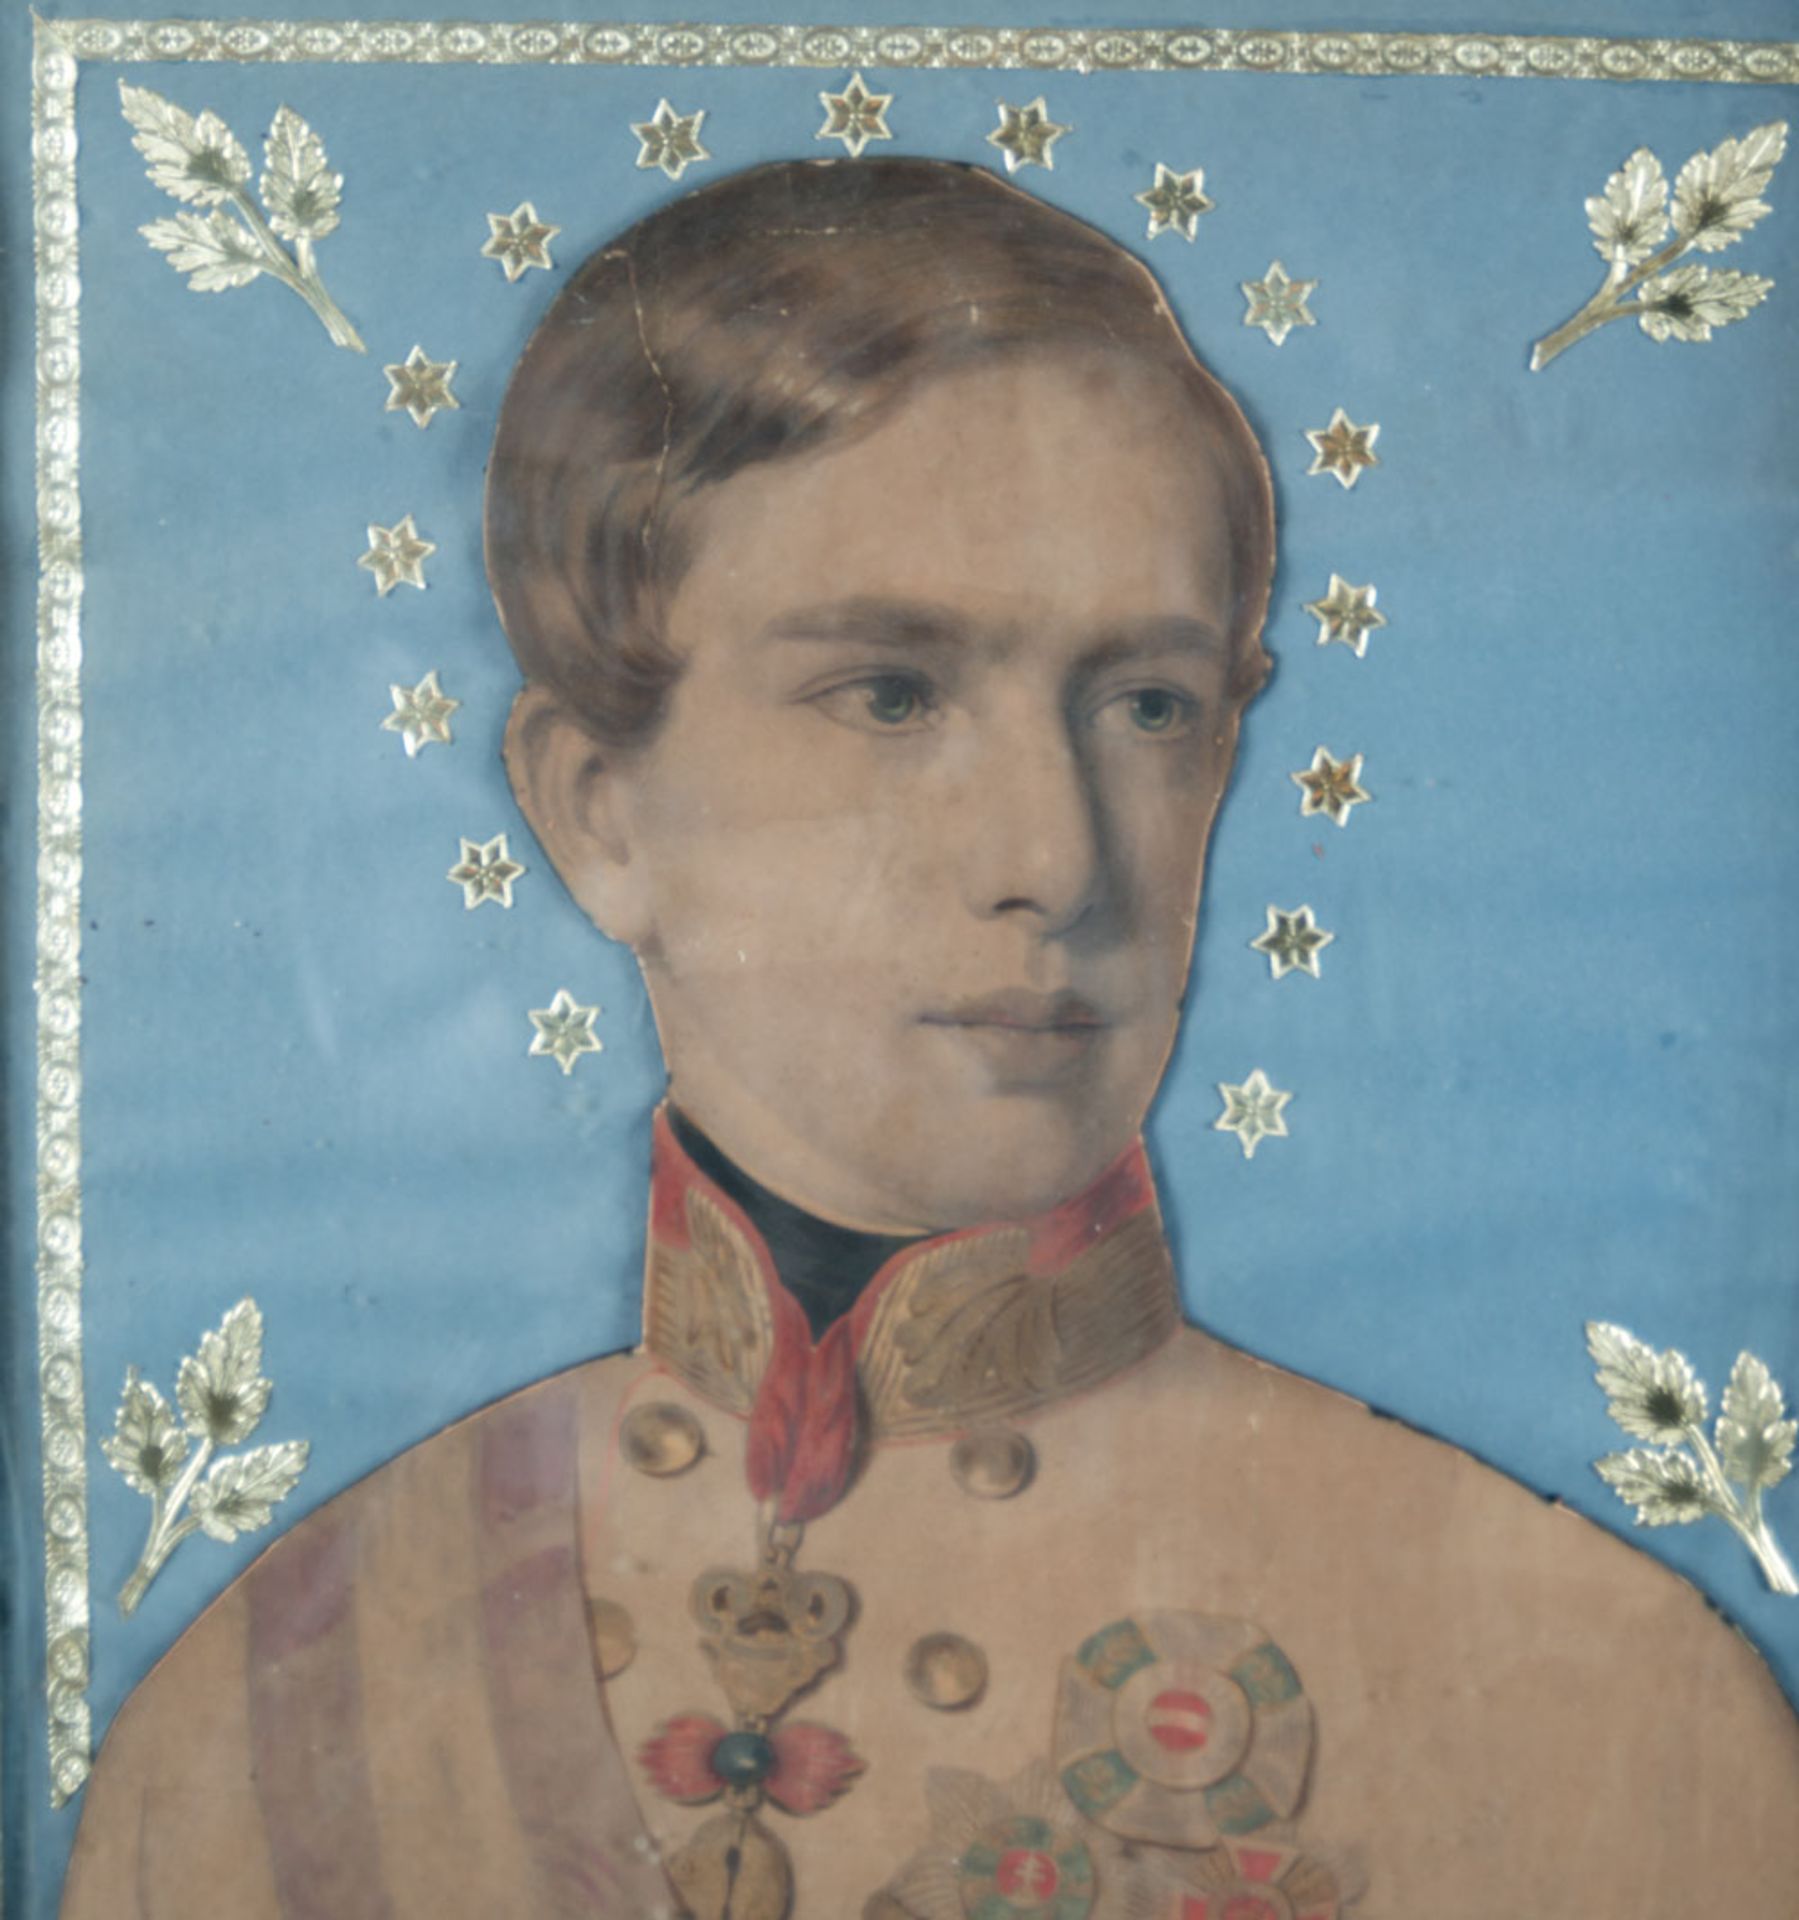 Emperor of Franz Joseph I (1830-1916) - Image 3 of 3